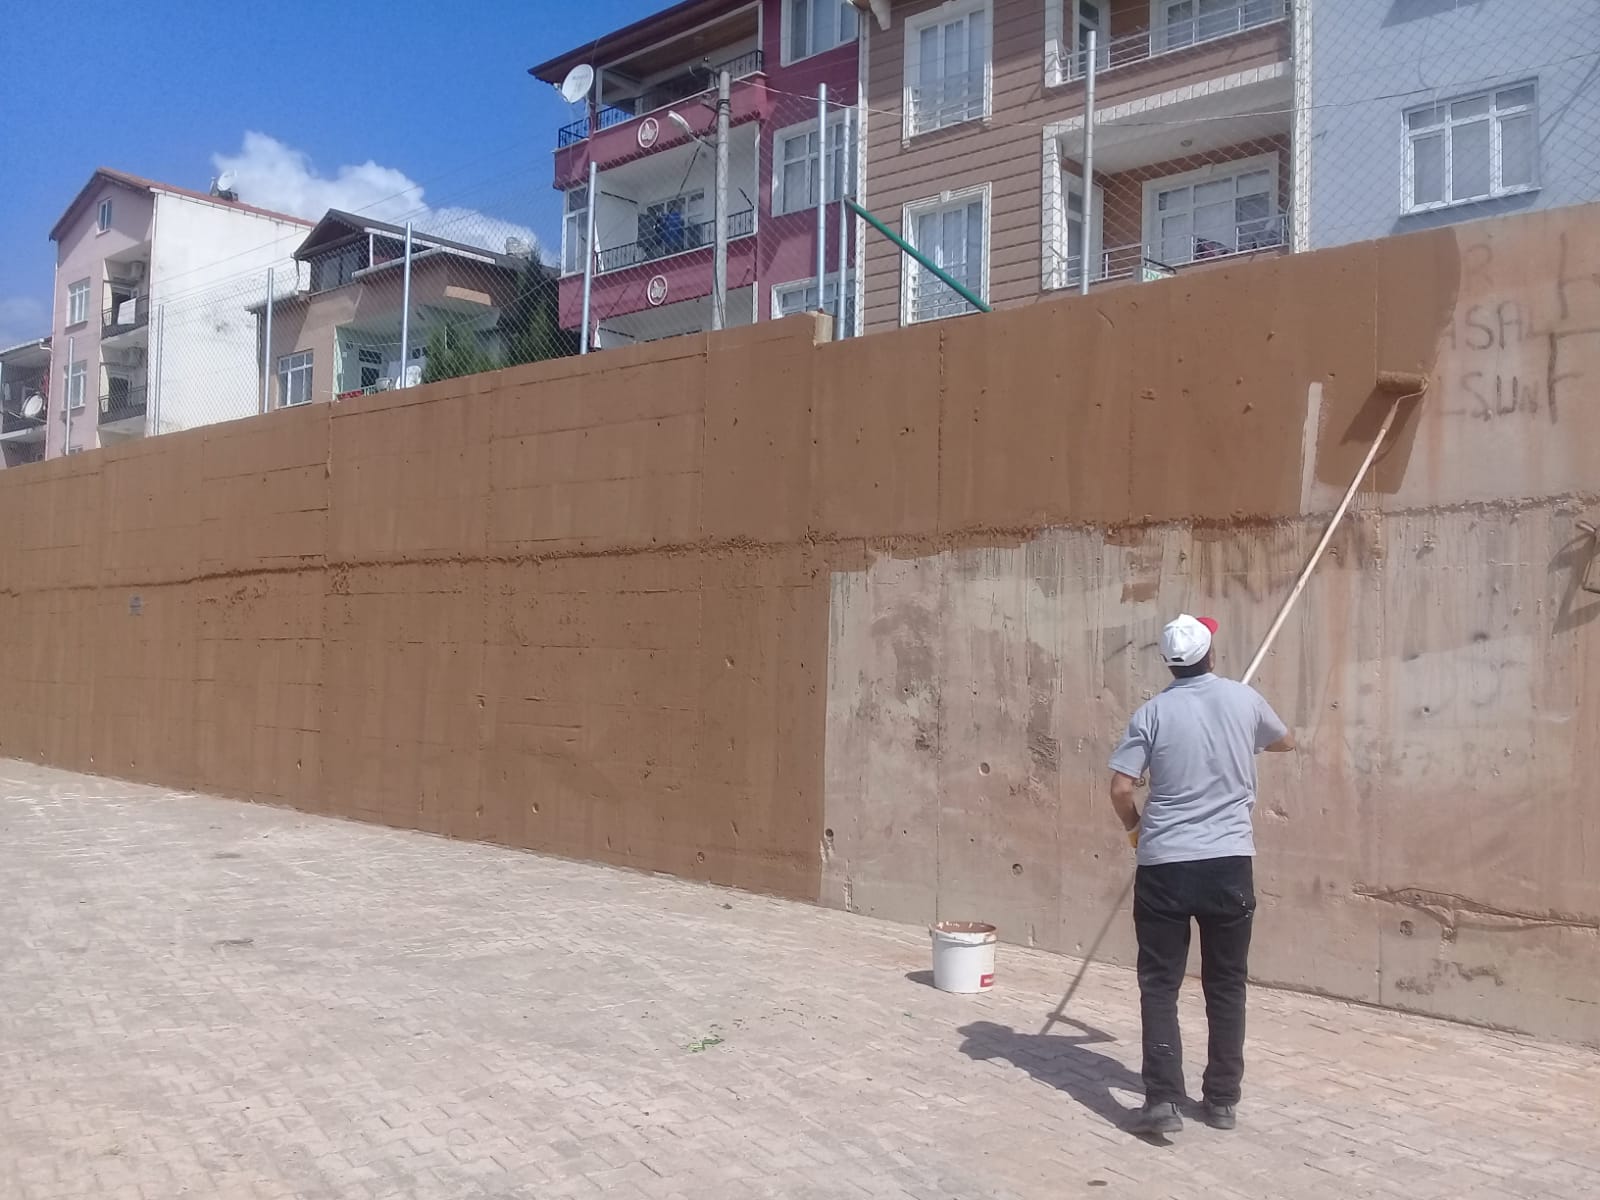 Körfez'de Duvar Yazıları Temizleniyor